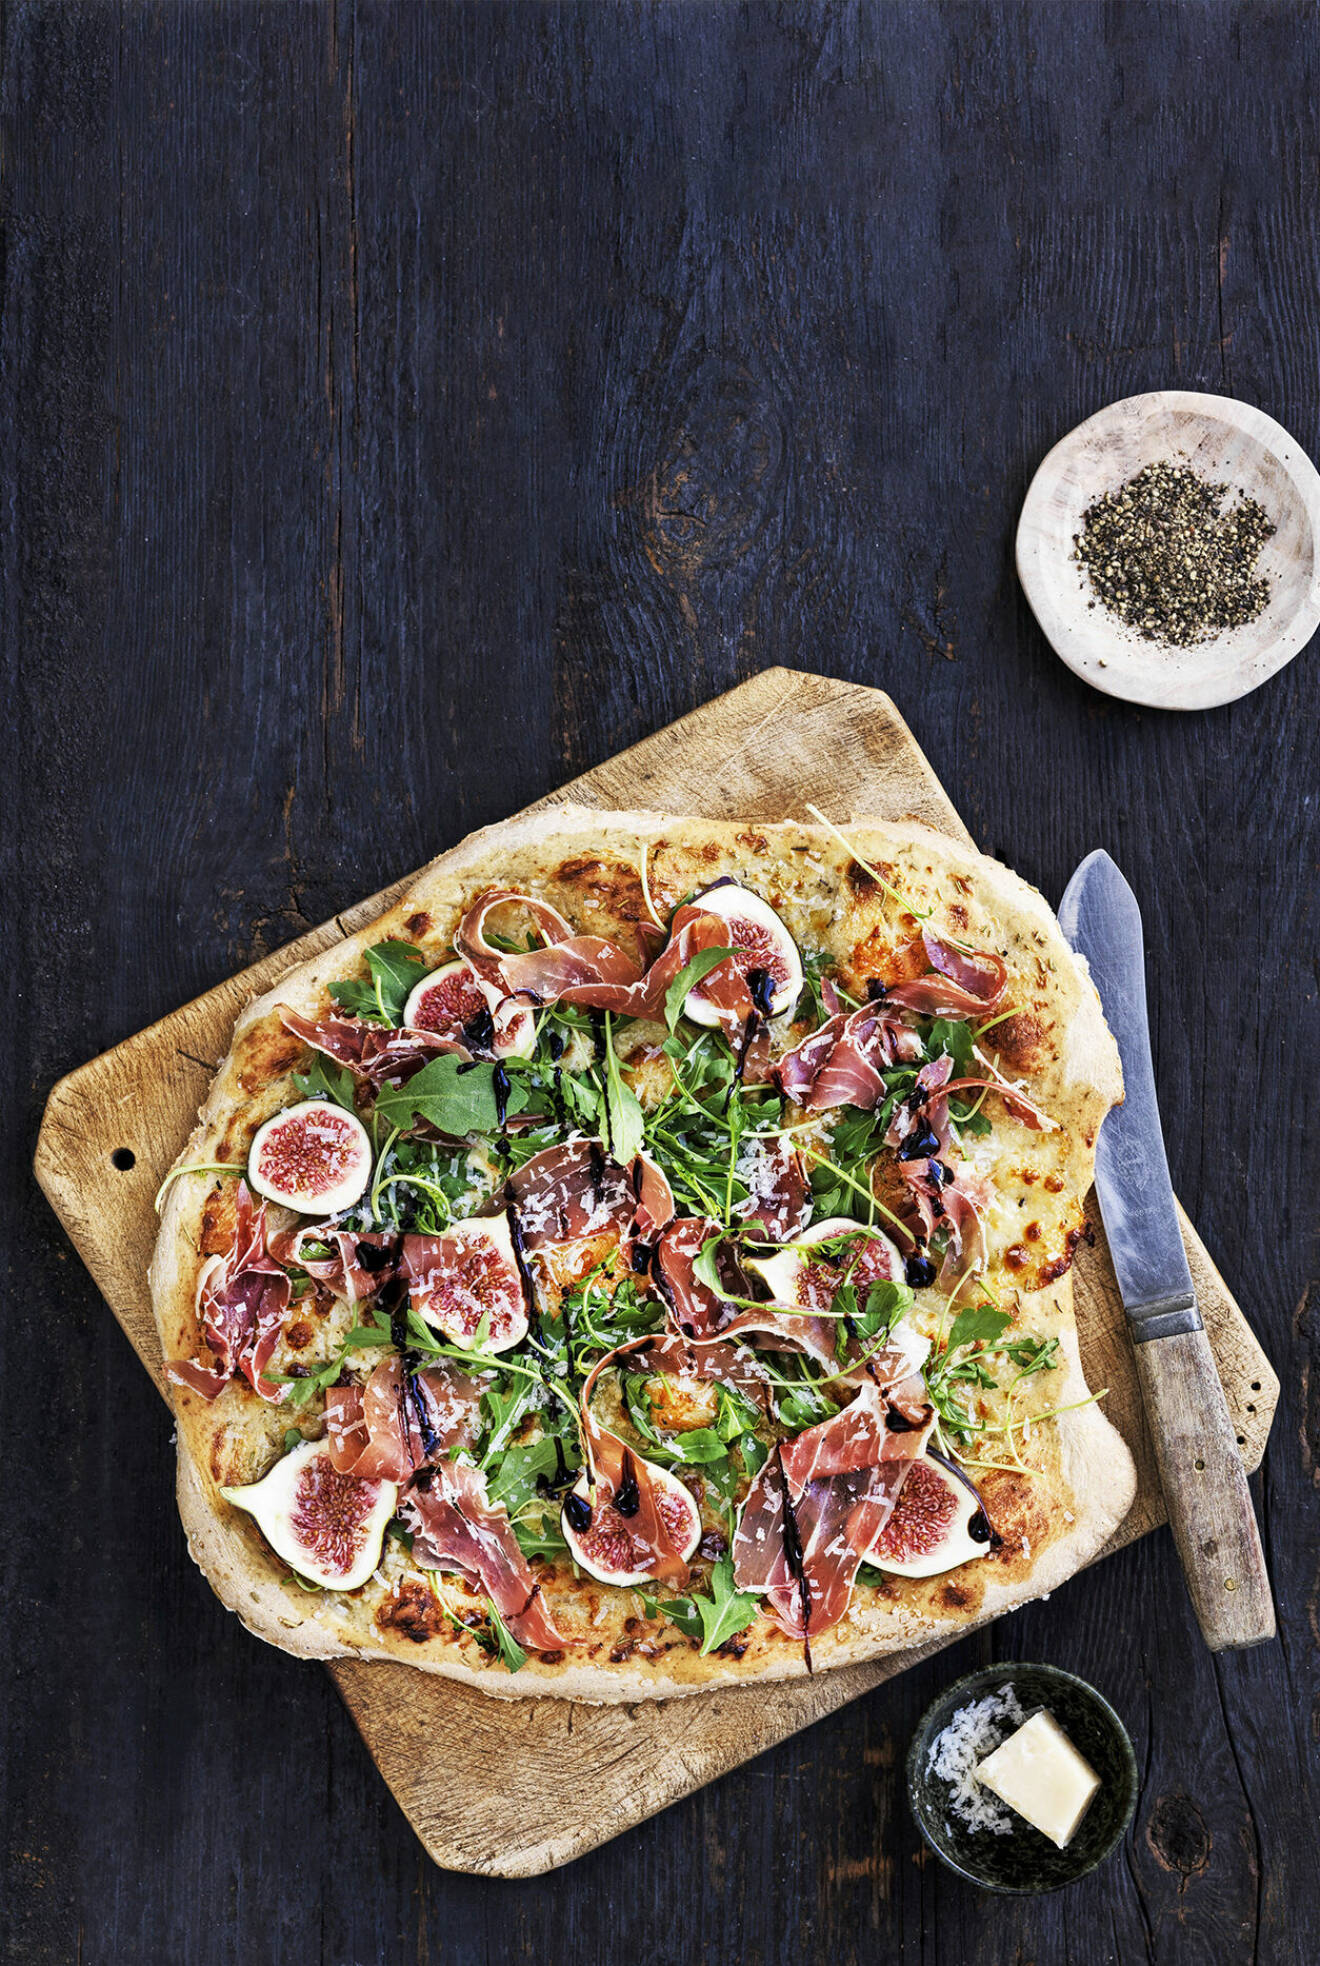 Bjud familjen på lyxig pizza med serranoskinka, rucola och fikon